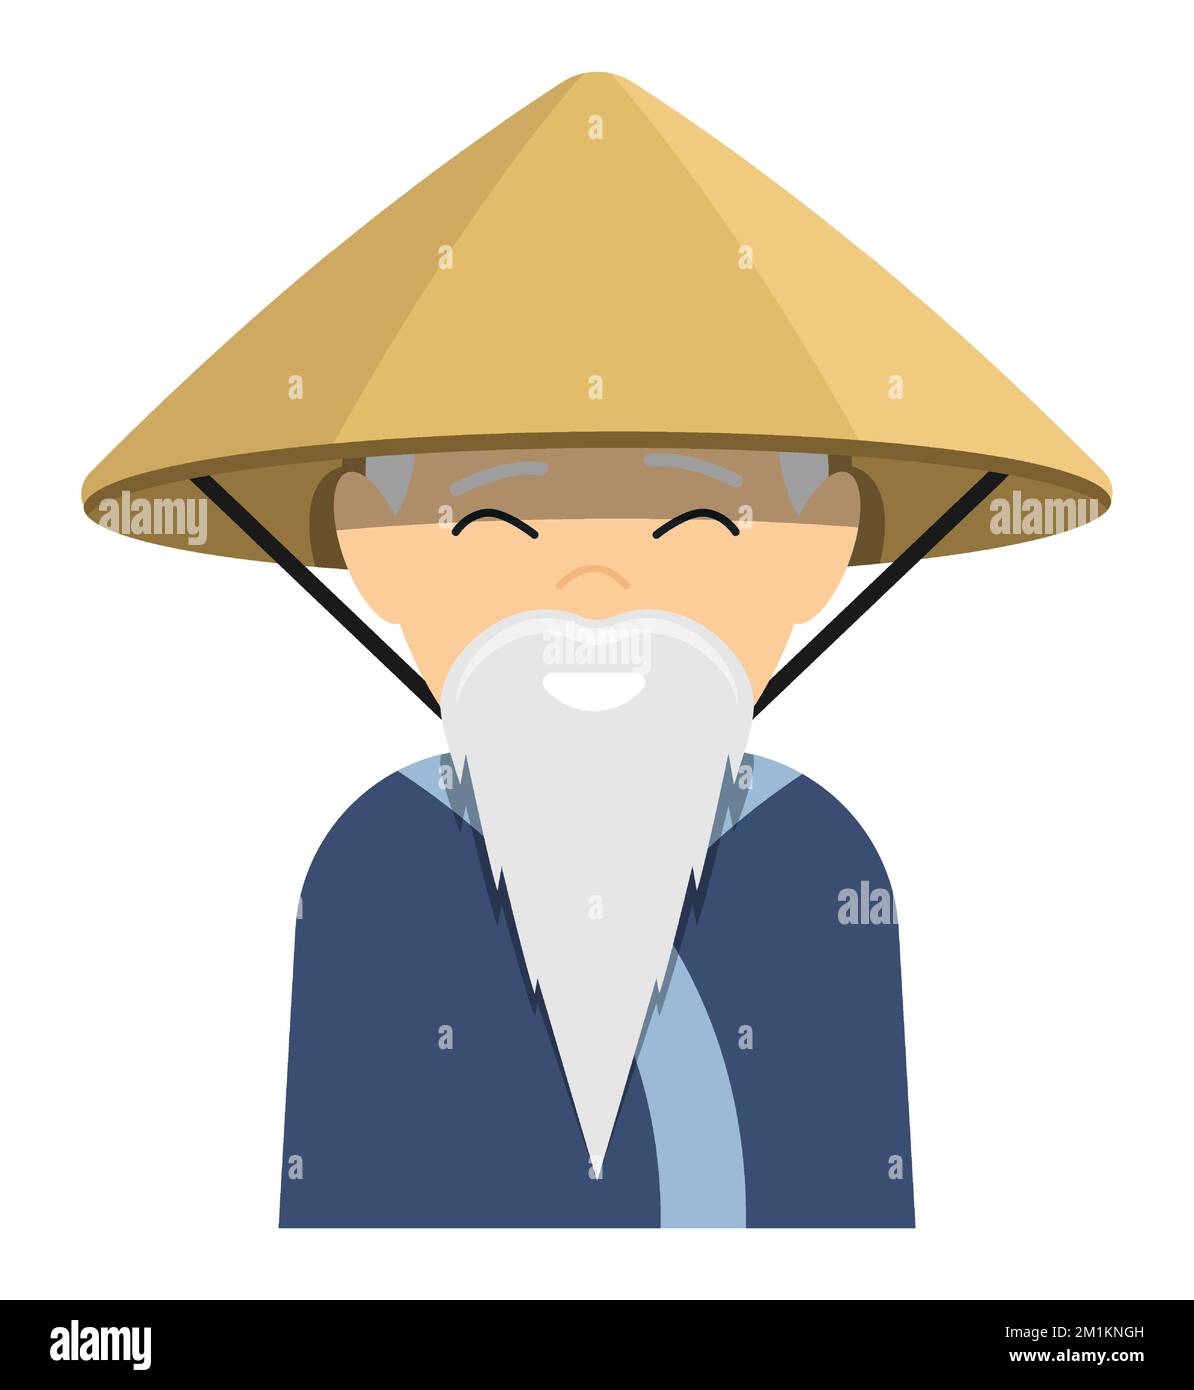 Asiatischer älterer Mann mit langem grauem Bart und rundem Hut aus nationalem Stroh. Thailändischer Bauer in traditioneller Kleidung. Zeichentrickfigur. Vektor auf weiß isoliert Stock Vektor